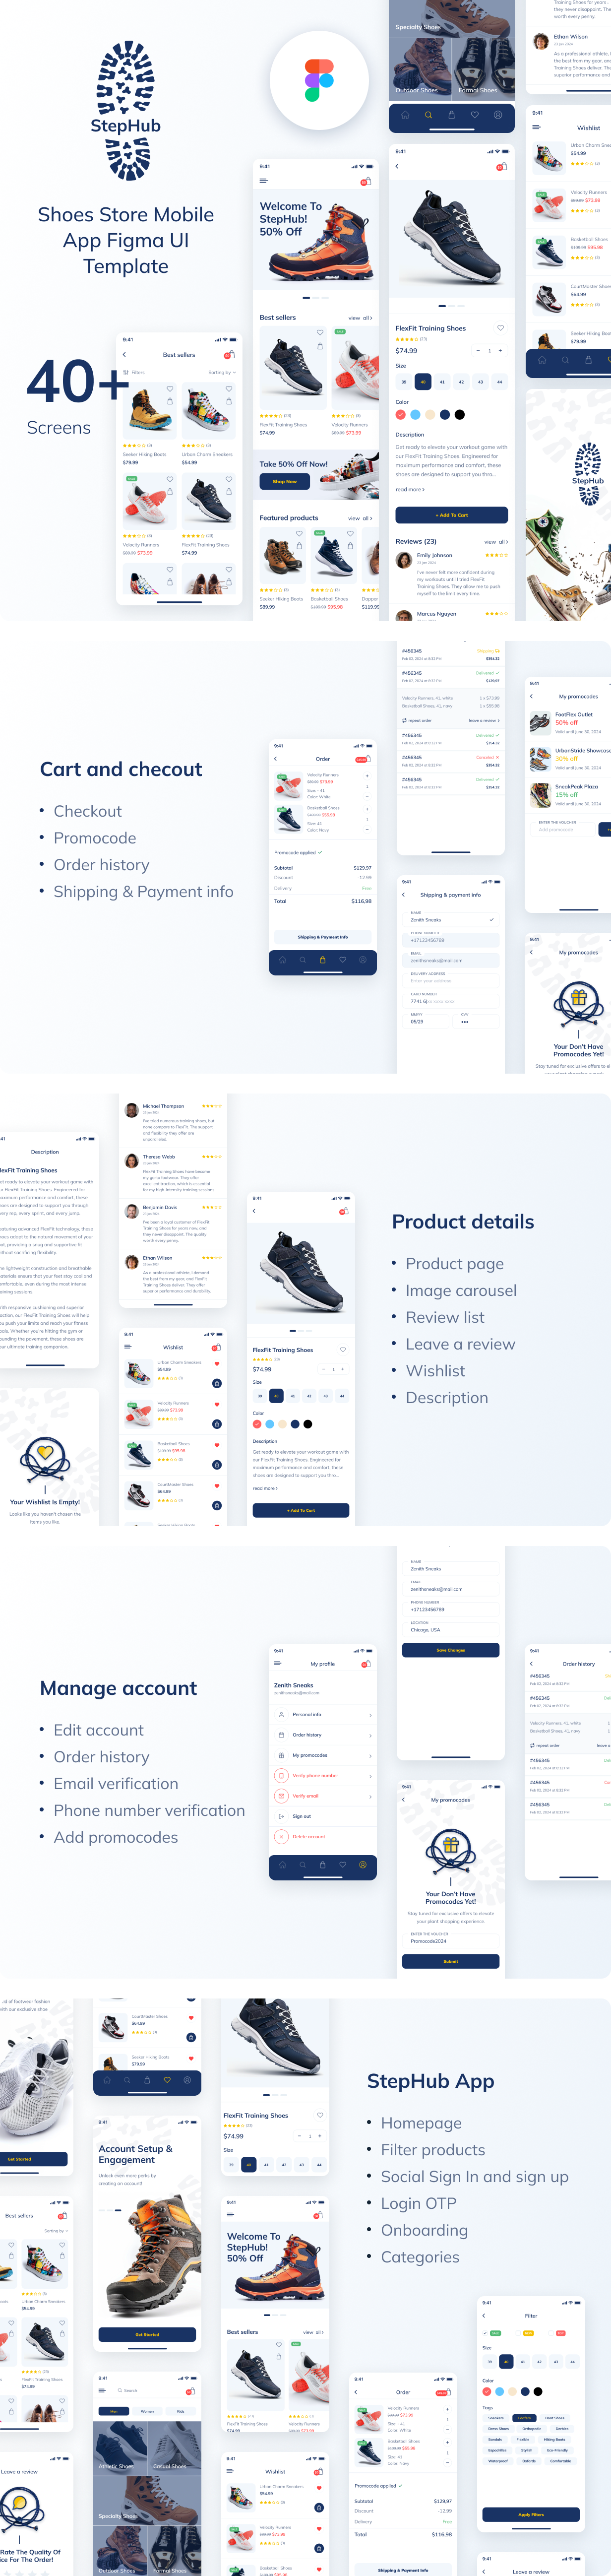 StepHub - Shoes Store Mobile App Figma UI Template - 2